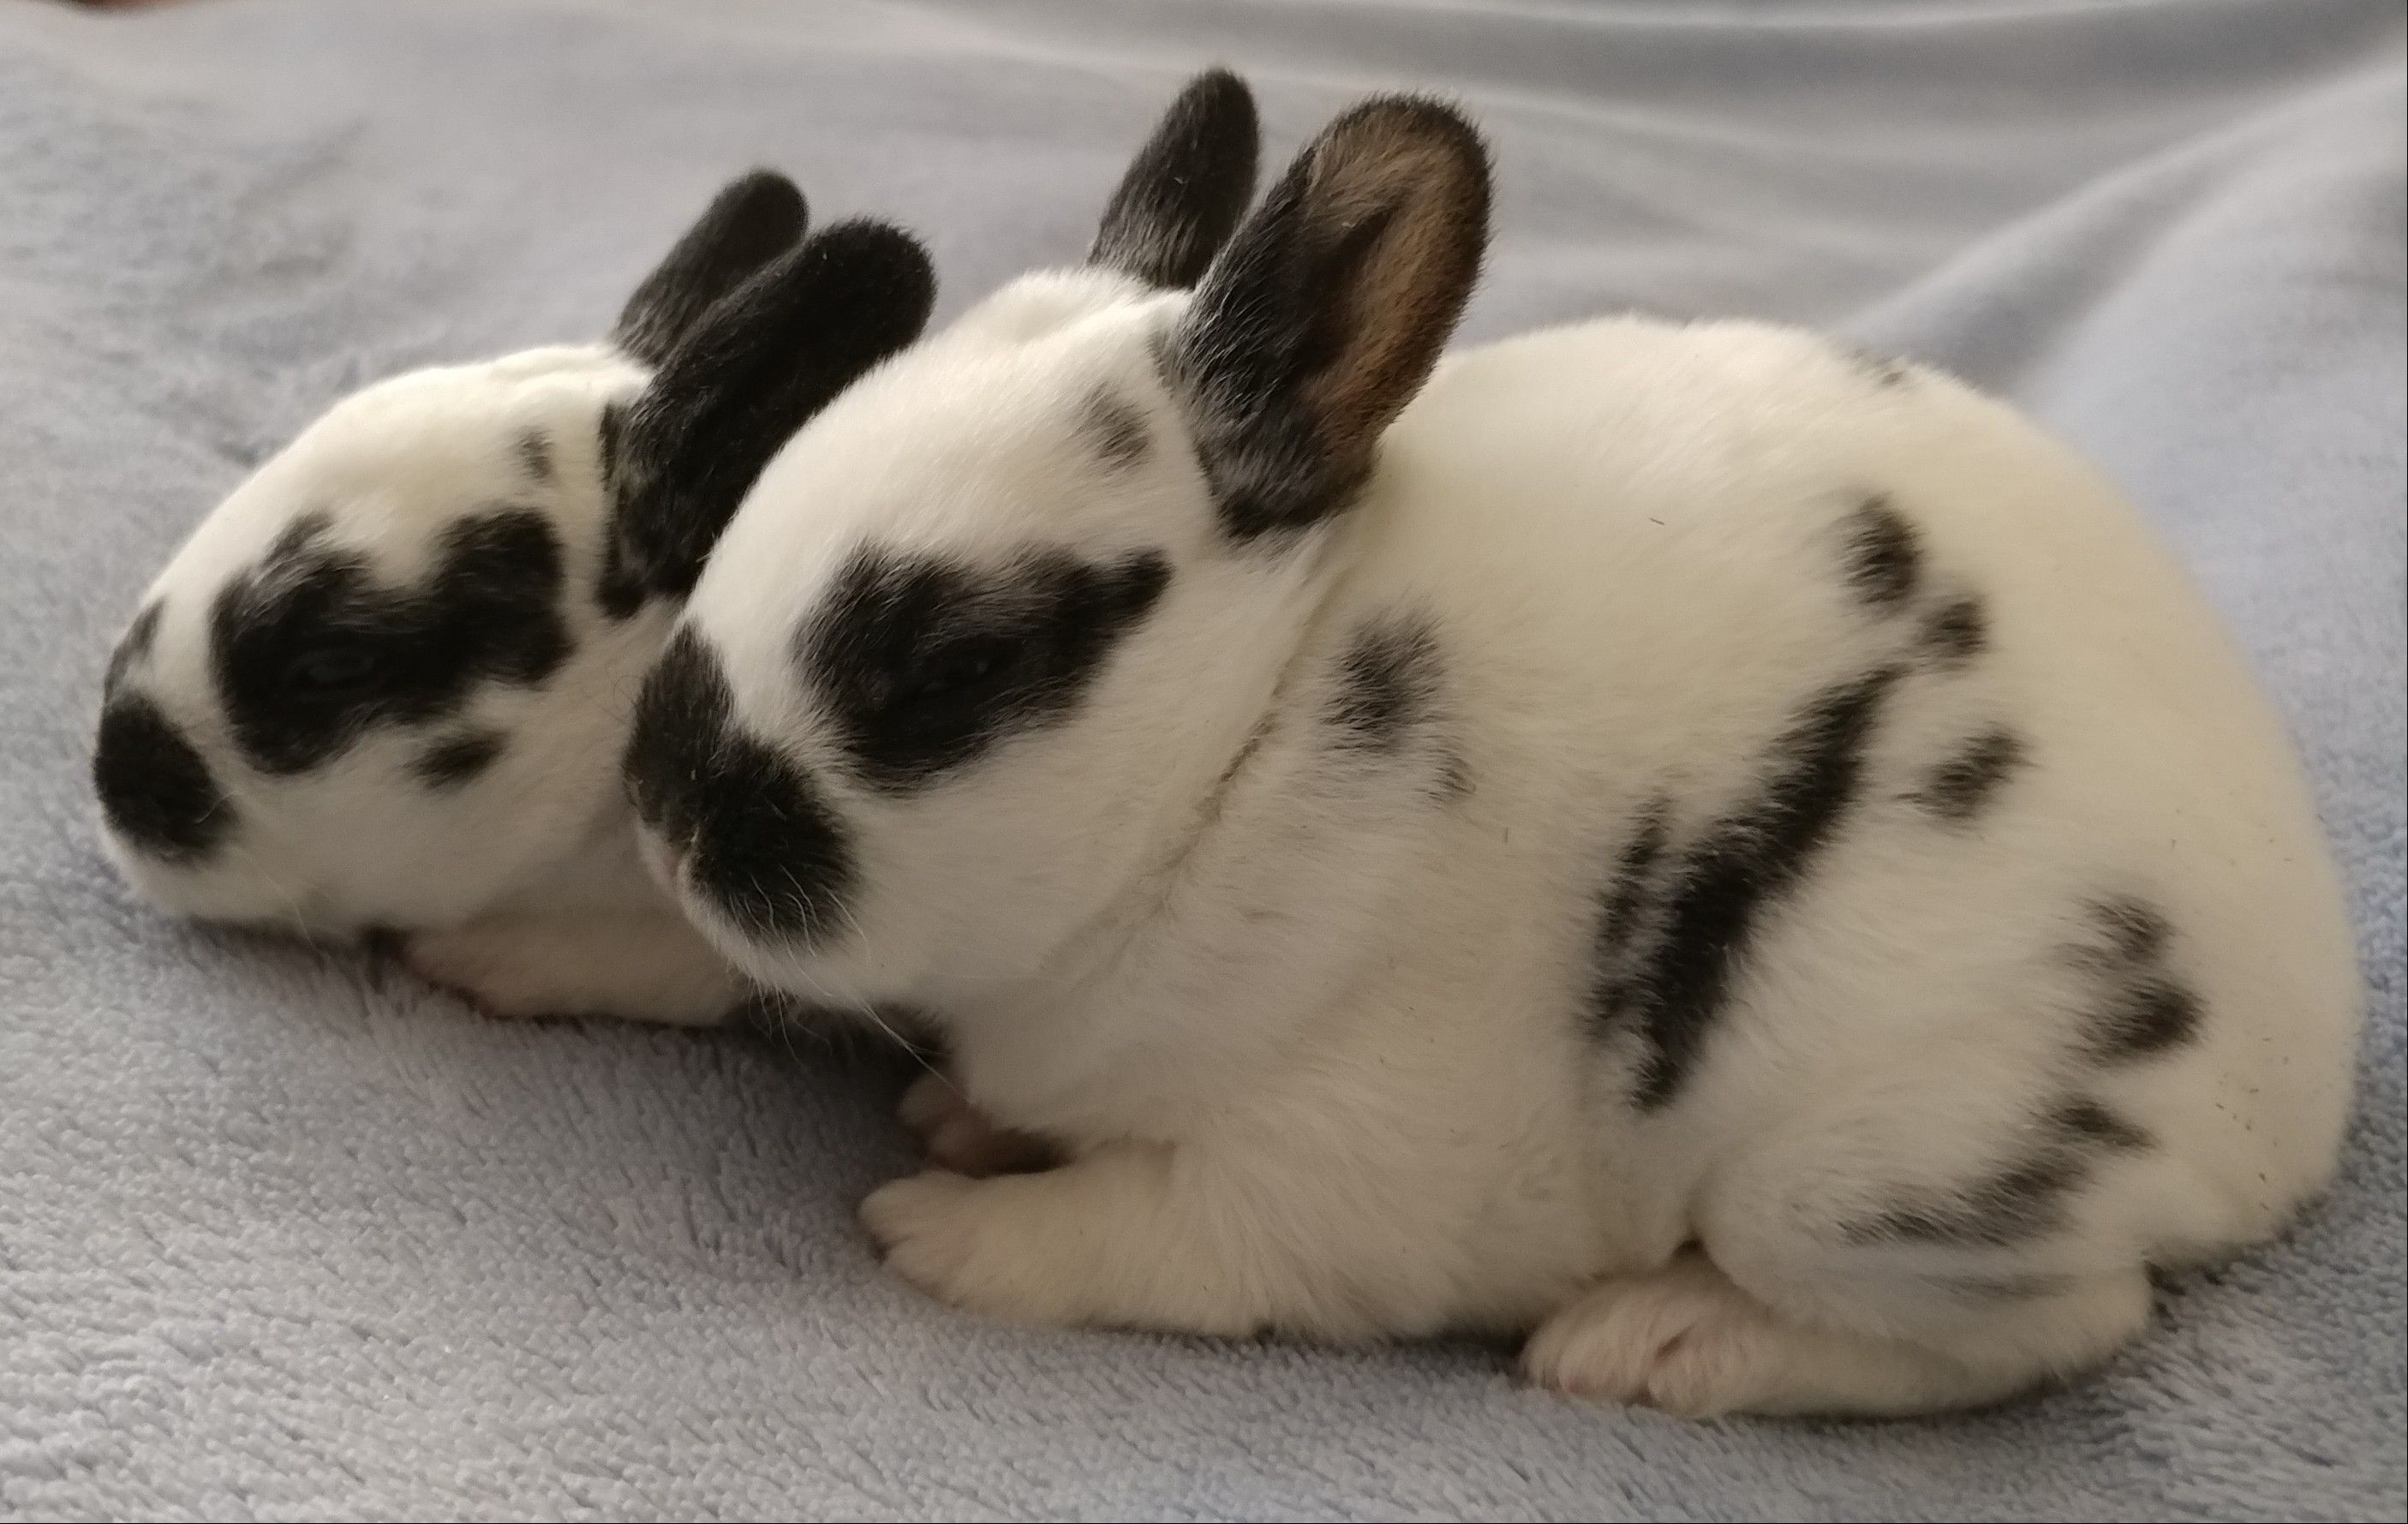 bunnies8.jpg